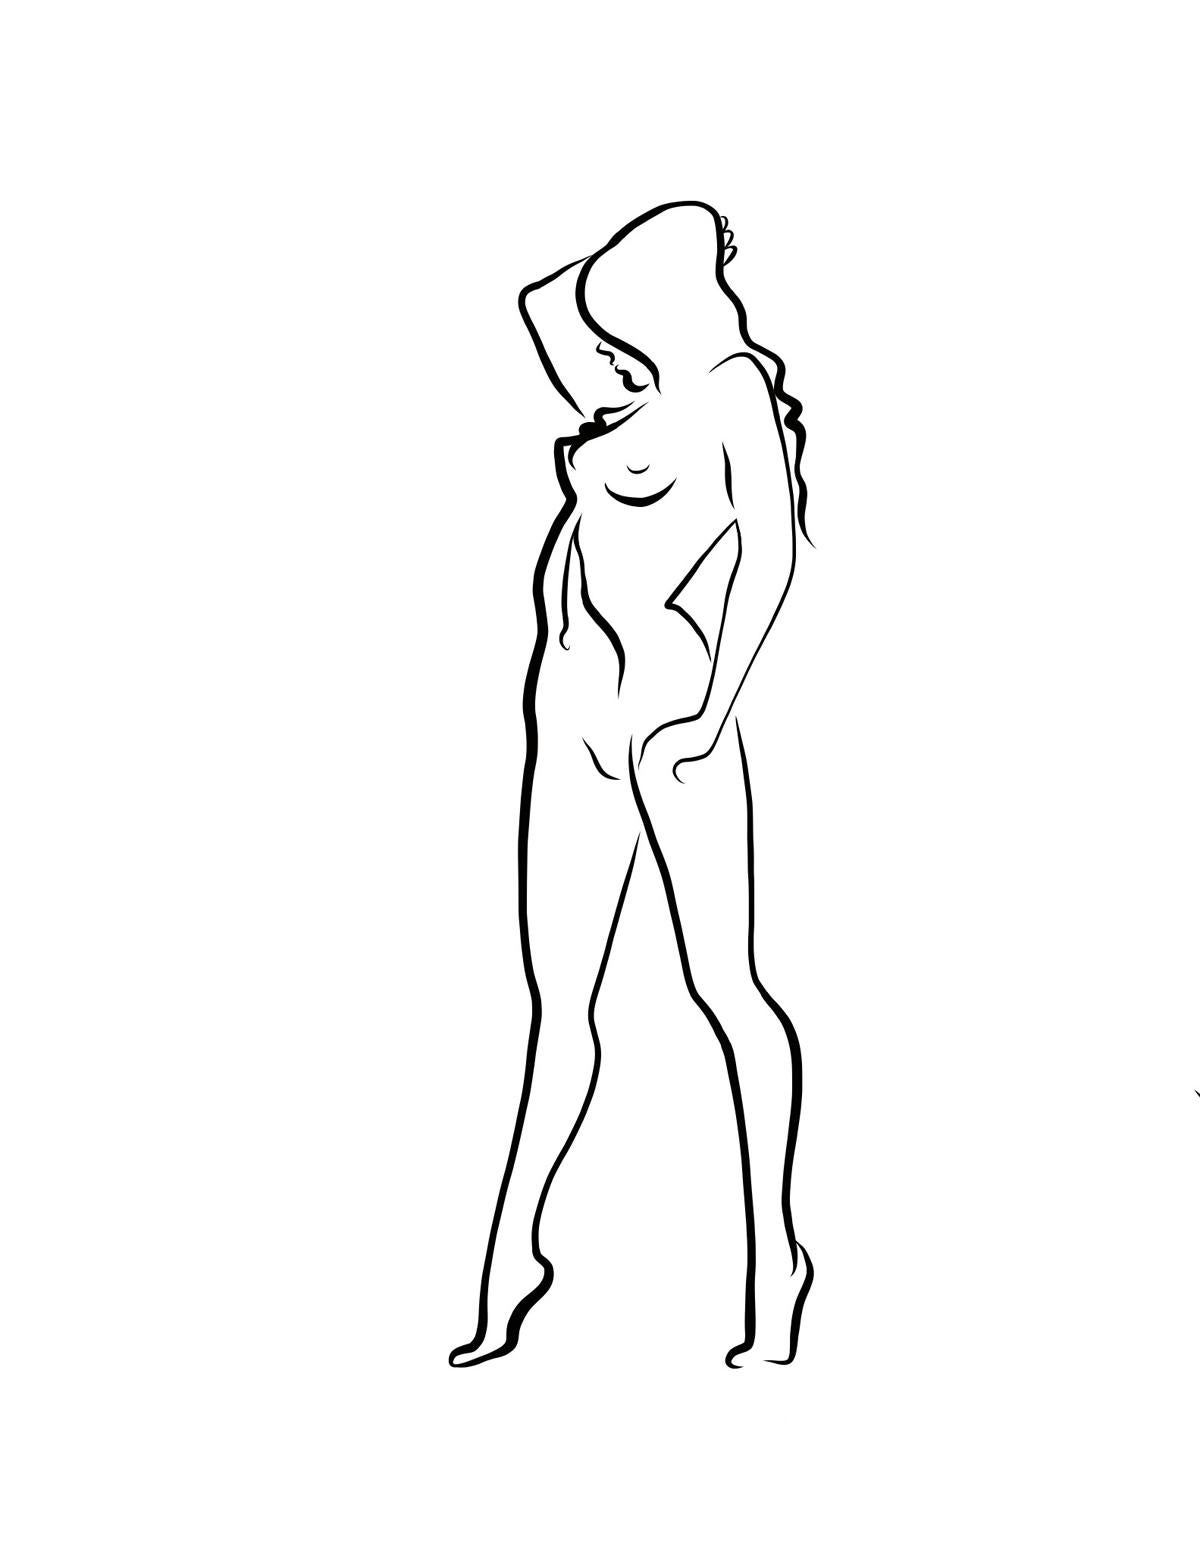 Haiku #32, 1/50 - Digital Vector Drawing Standing Female Nude Viewed Front - Art by Michael Binkley